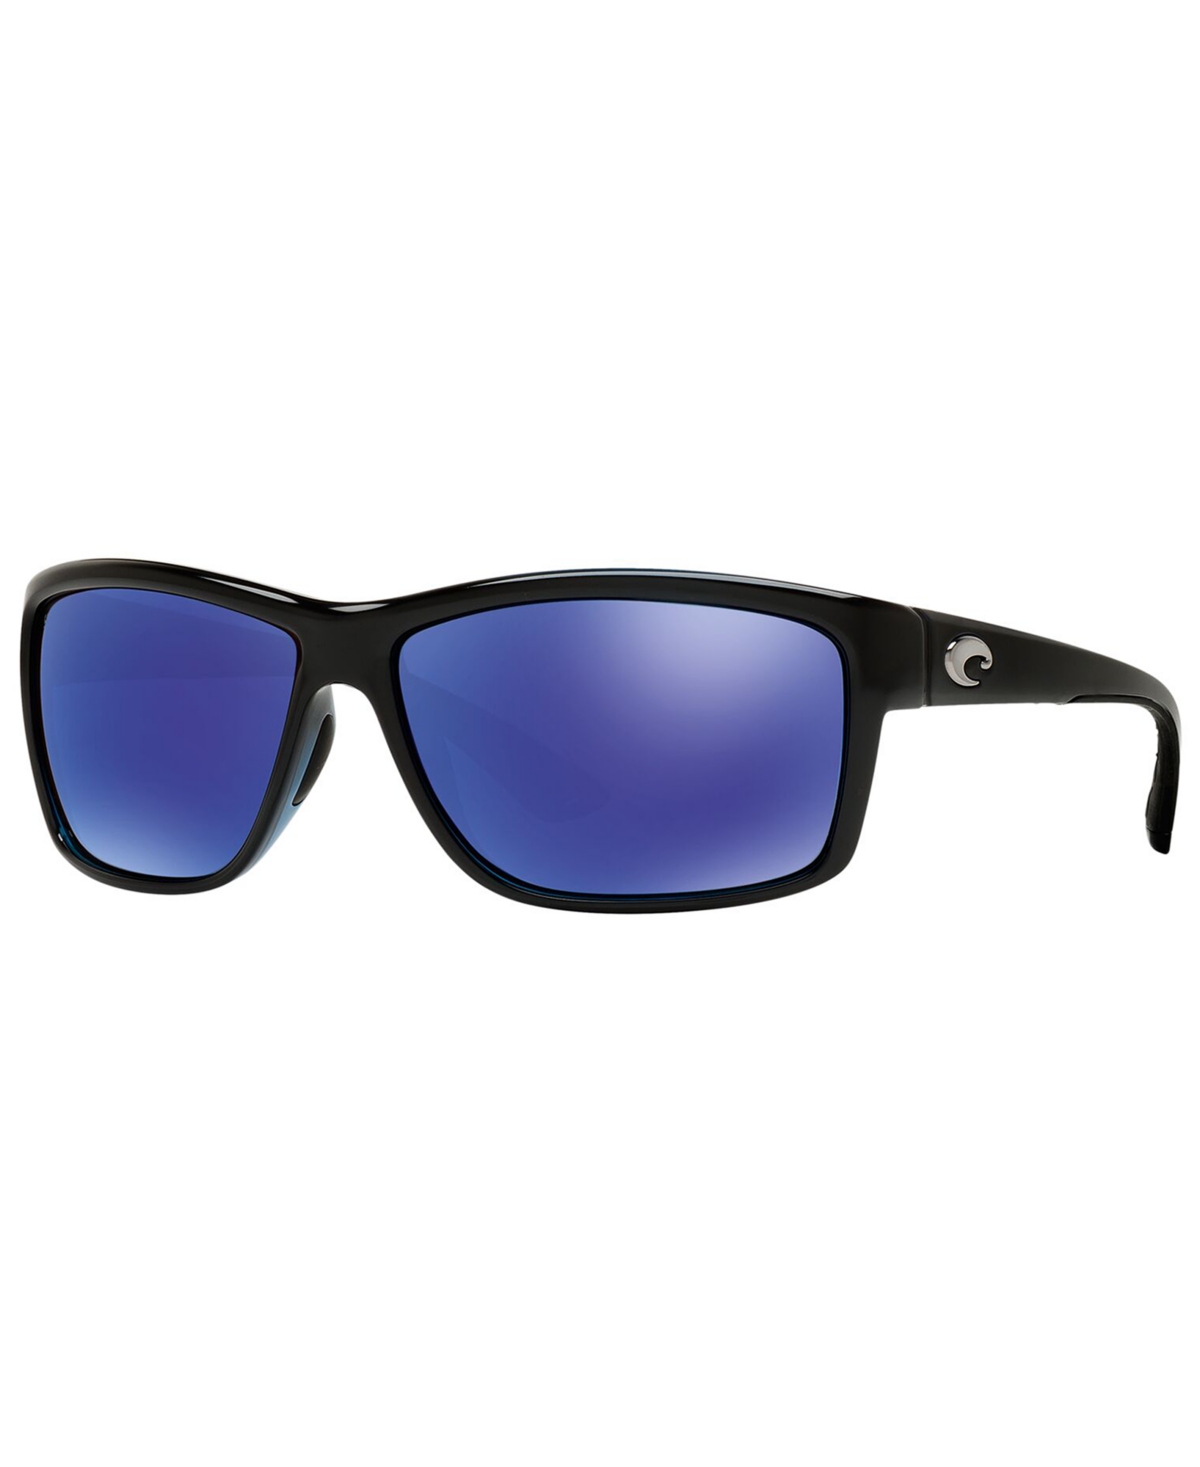 Men's Polarized Sunglasses - BLACK SHINY/BLUE MIR POL